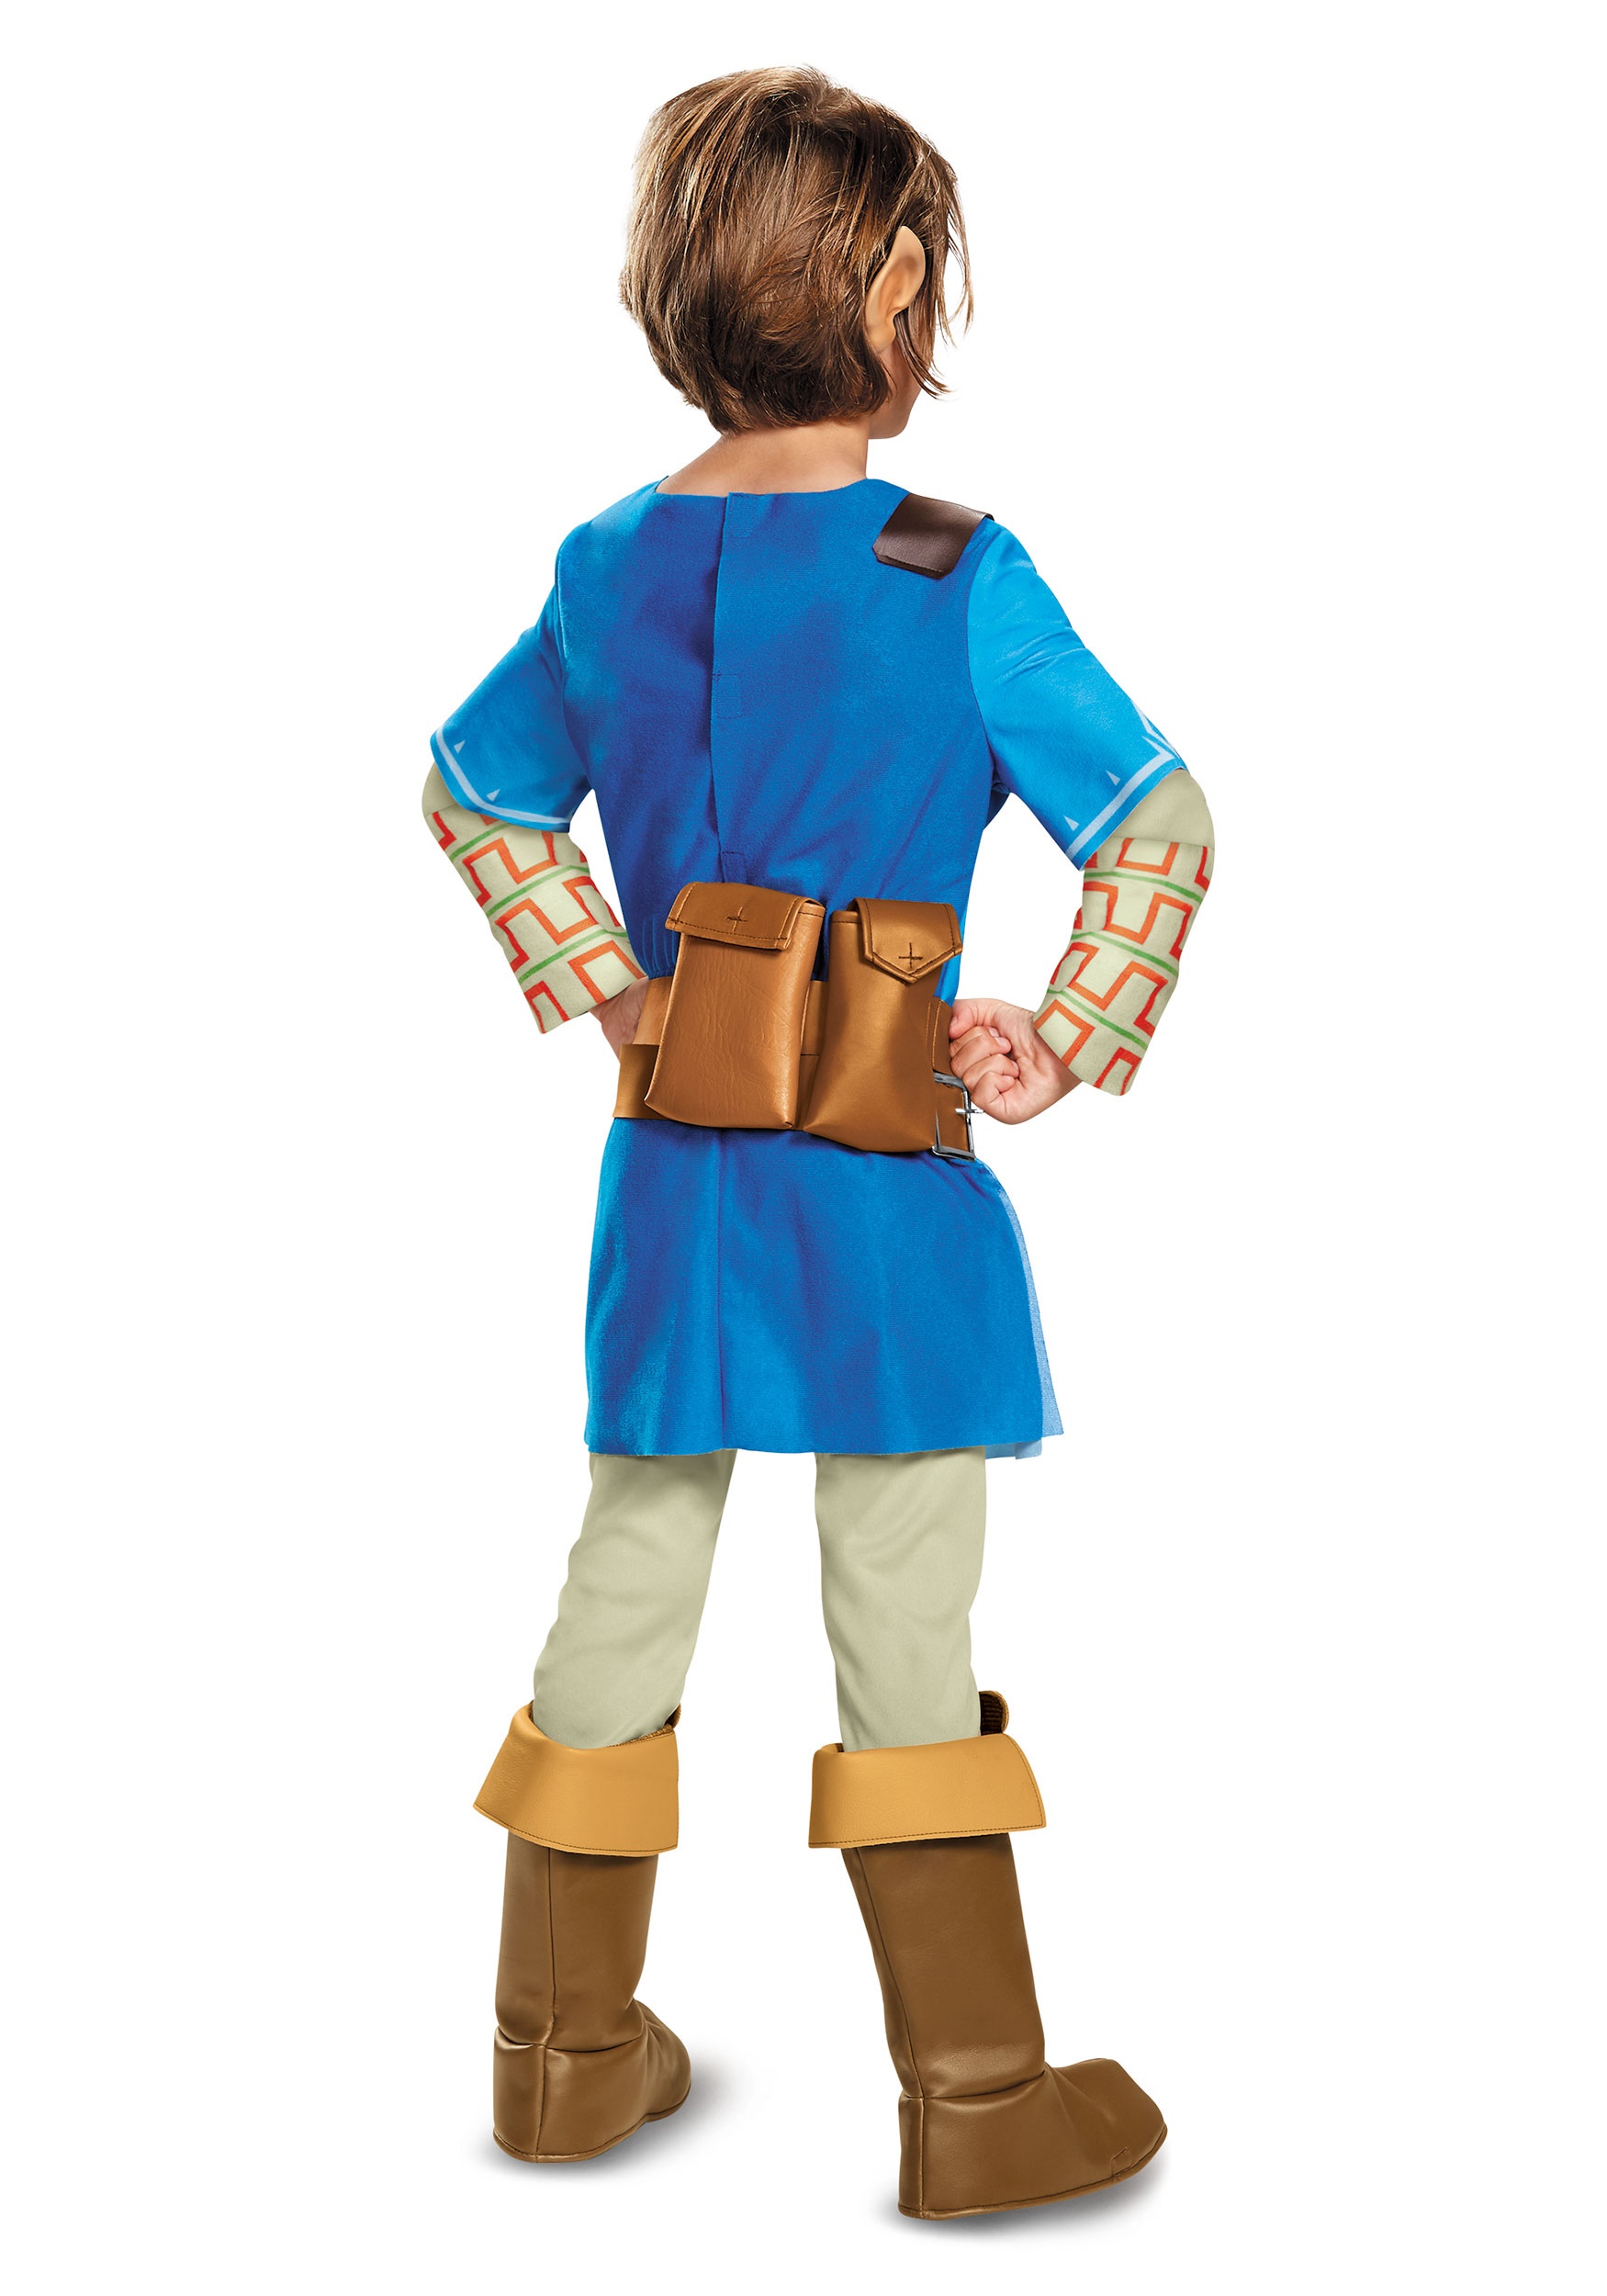 Link and zelda costume